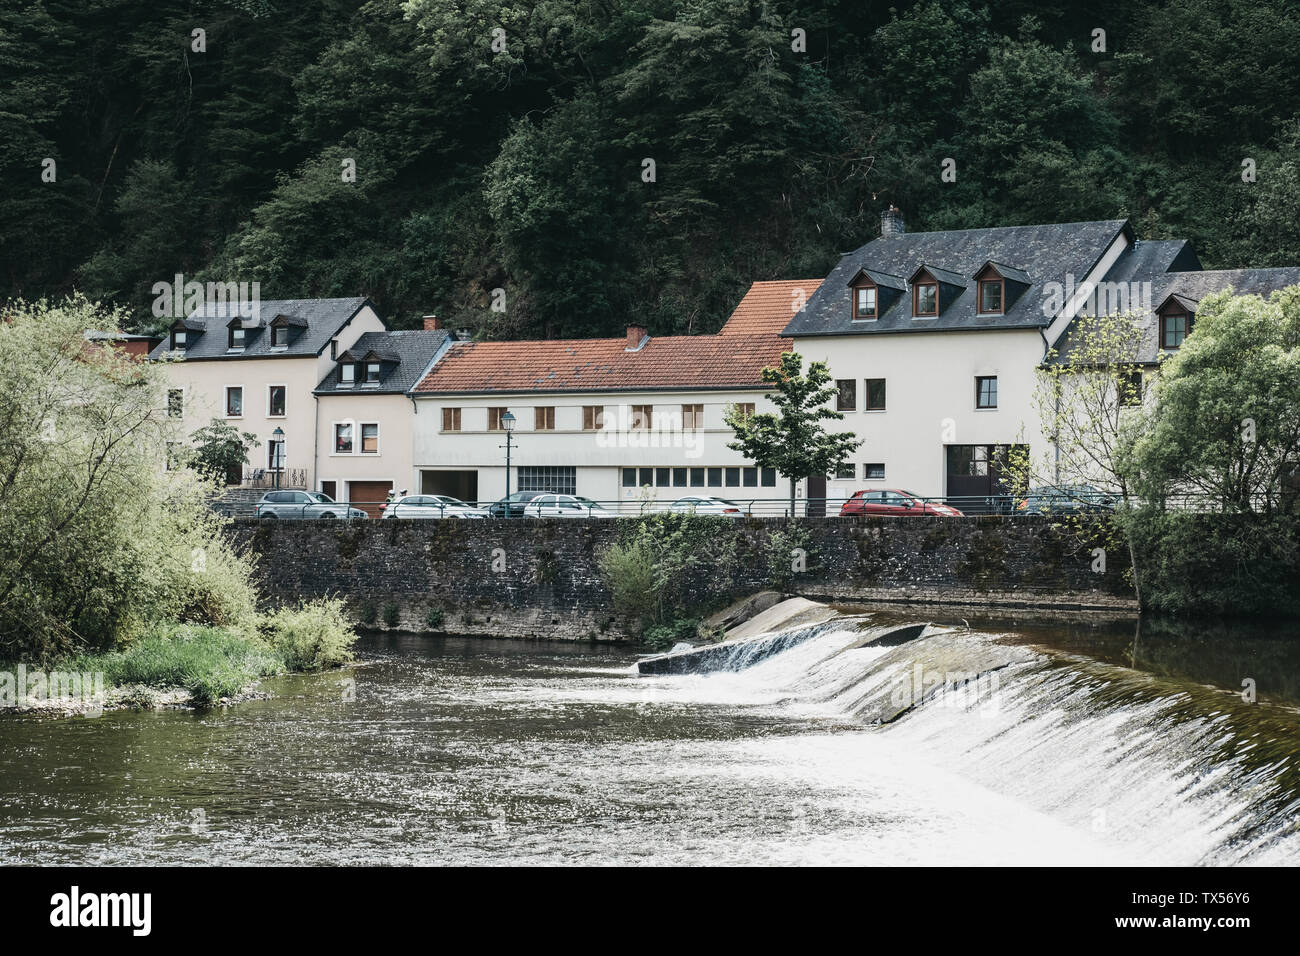 Vianden, Luxemburg - 18. Mai 2019: Wehr am Fluss in Vianden, eine Stadt in Luxembourgs Ardennes Region bekannt für den Jahrhunderte alten Hügel Viande Stockfoto